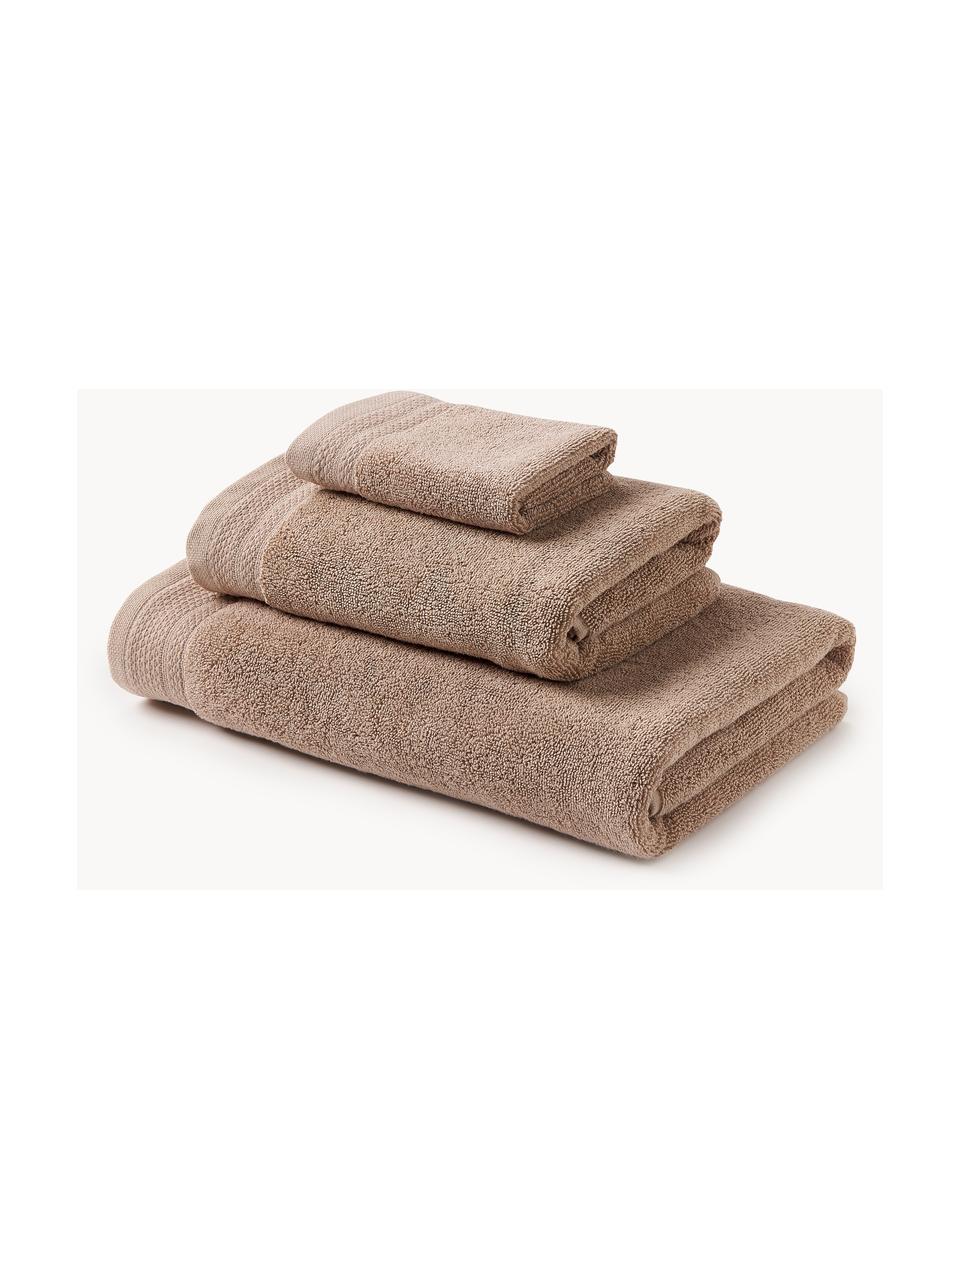 Lot de serviettes de bain en coton bio Premium, 3 élém., 100 % coton bio certifié GOTS (par GCL International, GCL-300517)
Qualité supérieure 600 g/m², Beige, Lot de différentes tailles